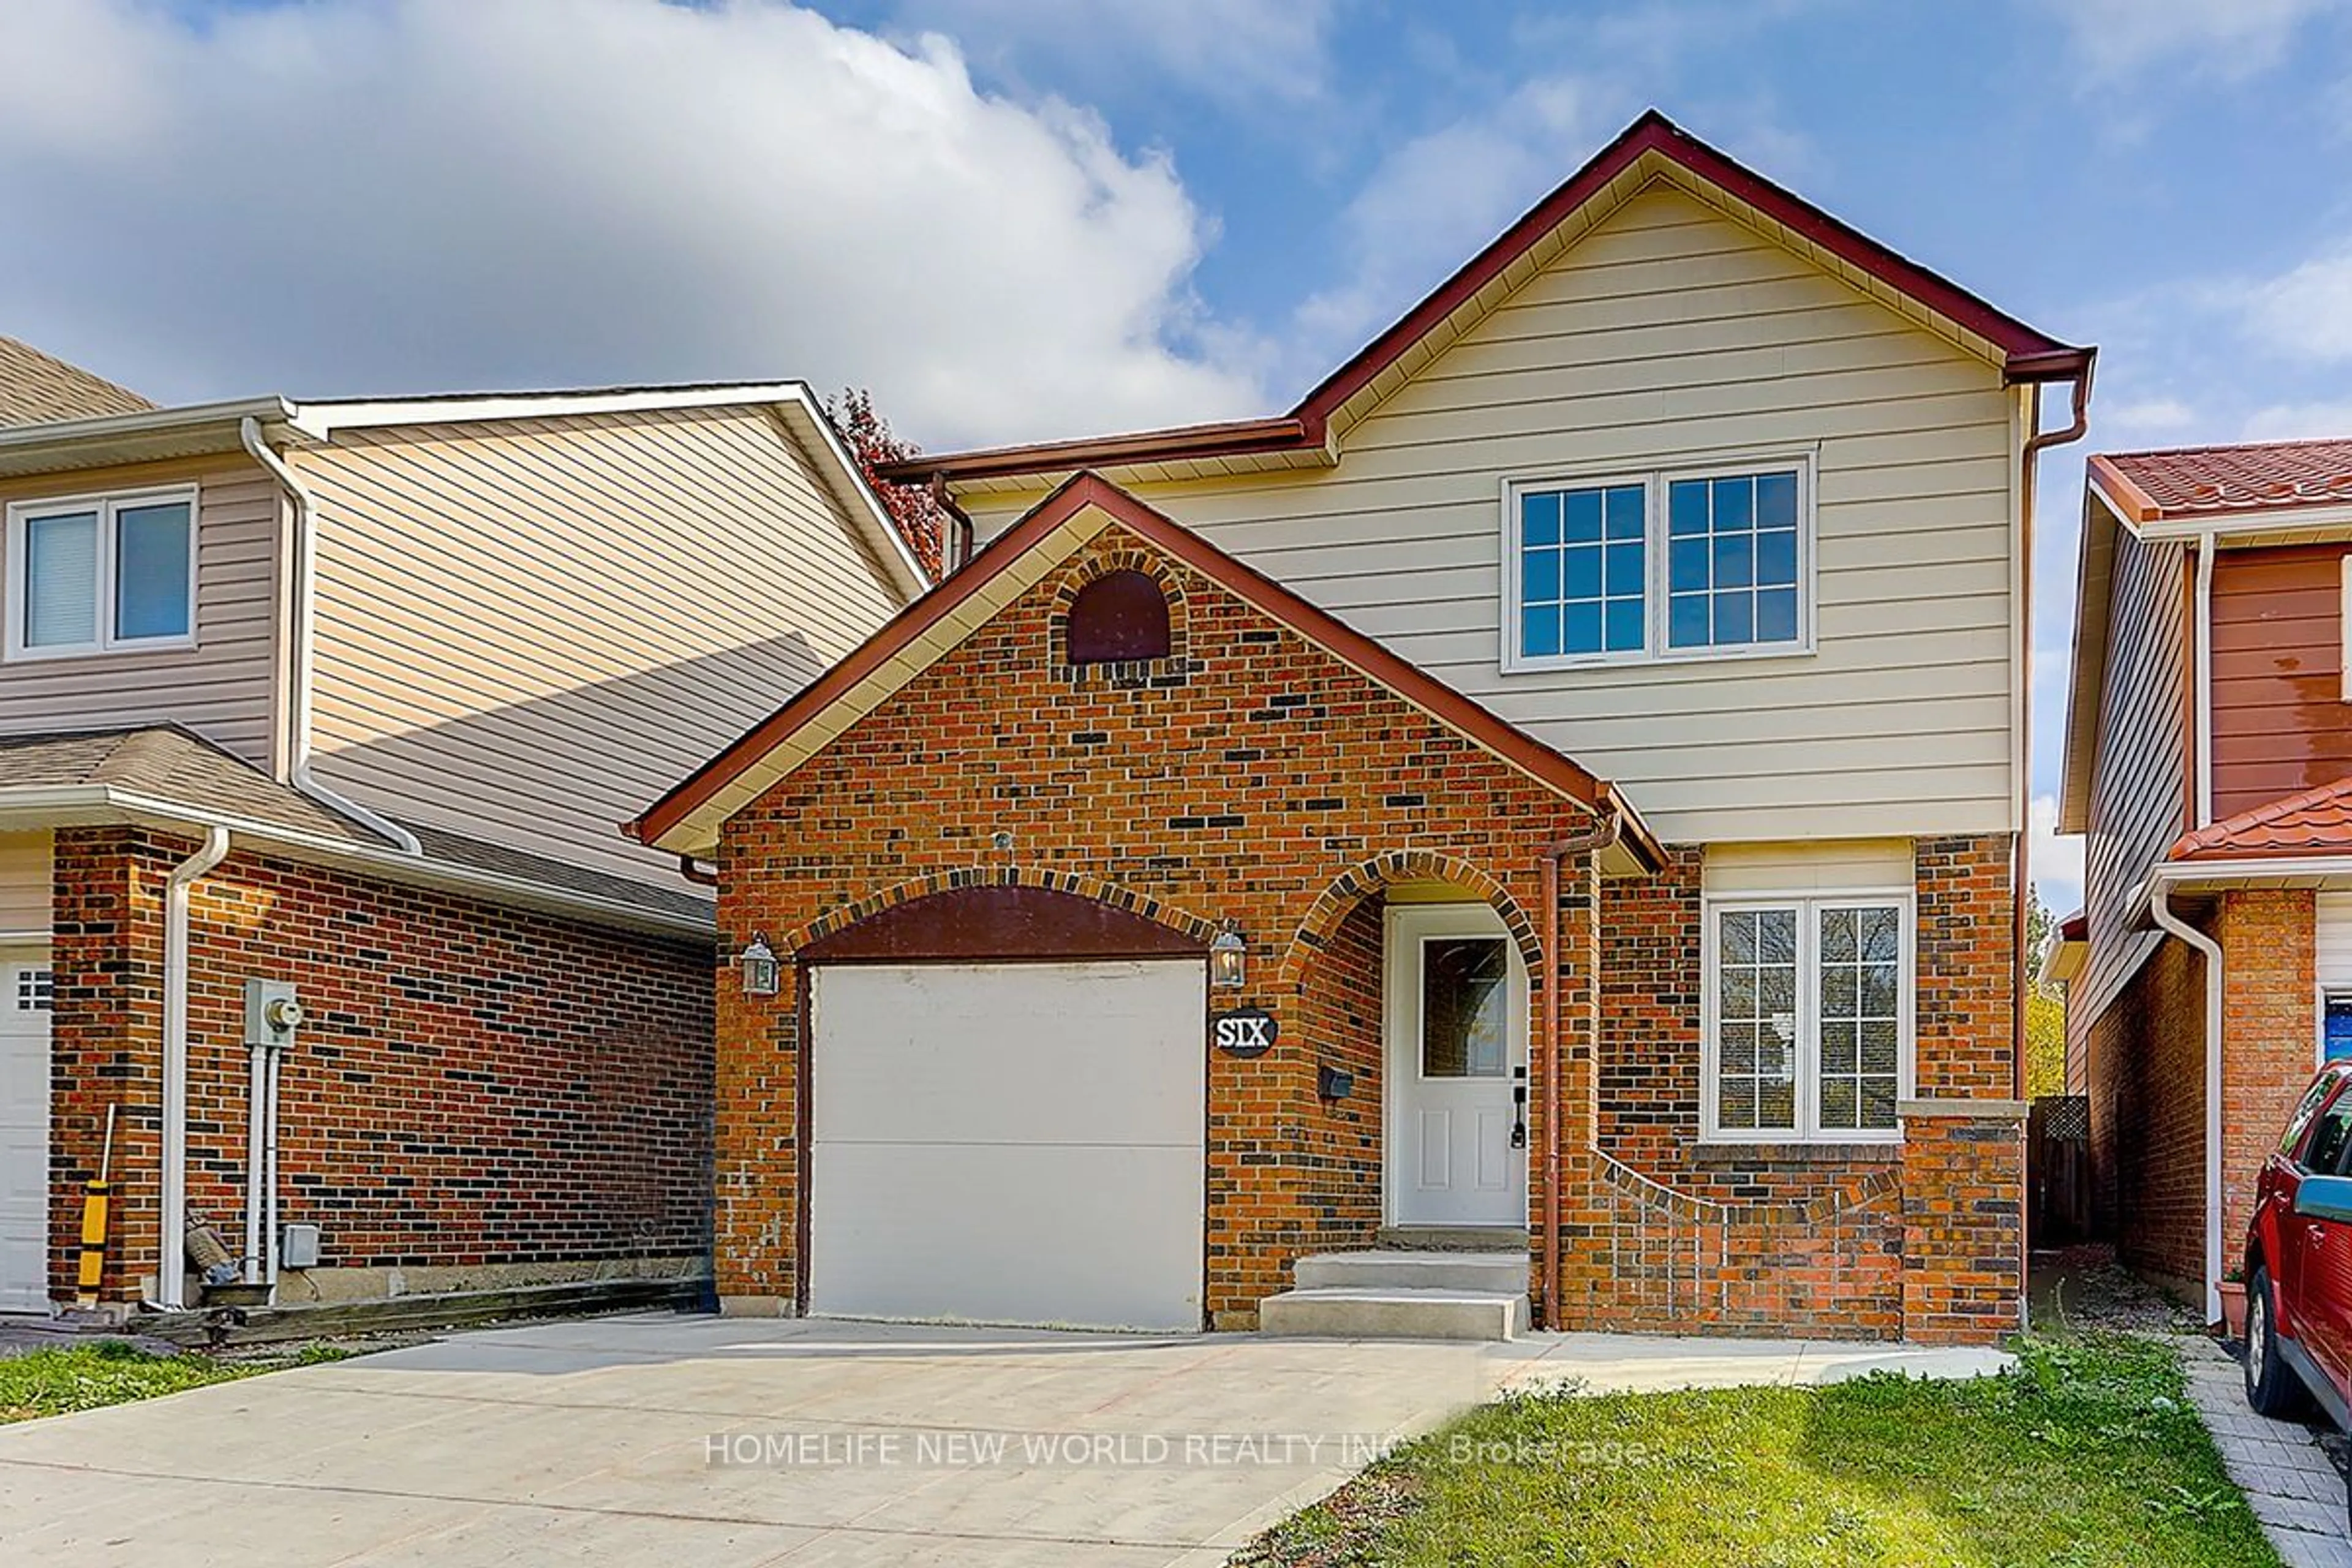 Home with brick exterior material for 6 Foxacre Row, Brampton Ontario L6V 3P5